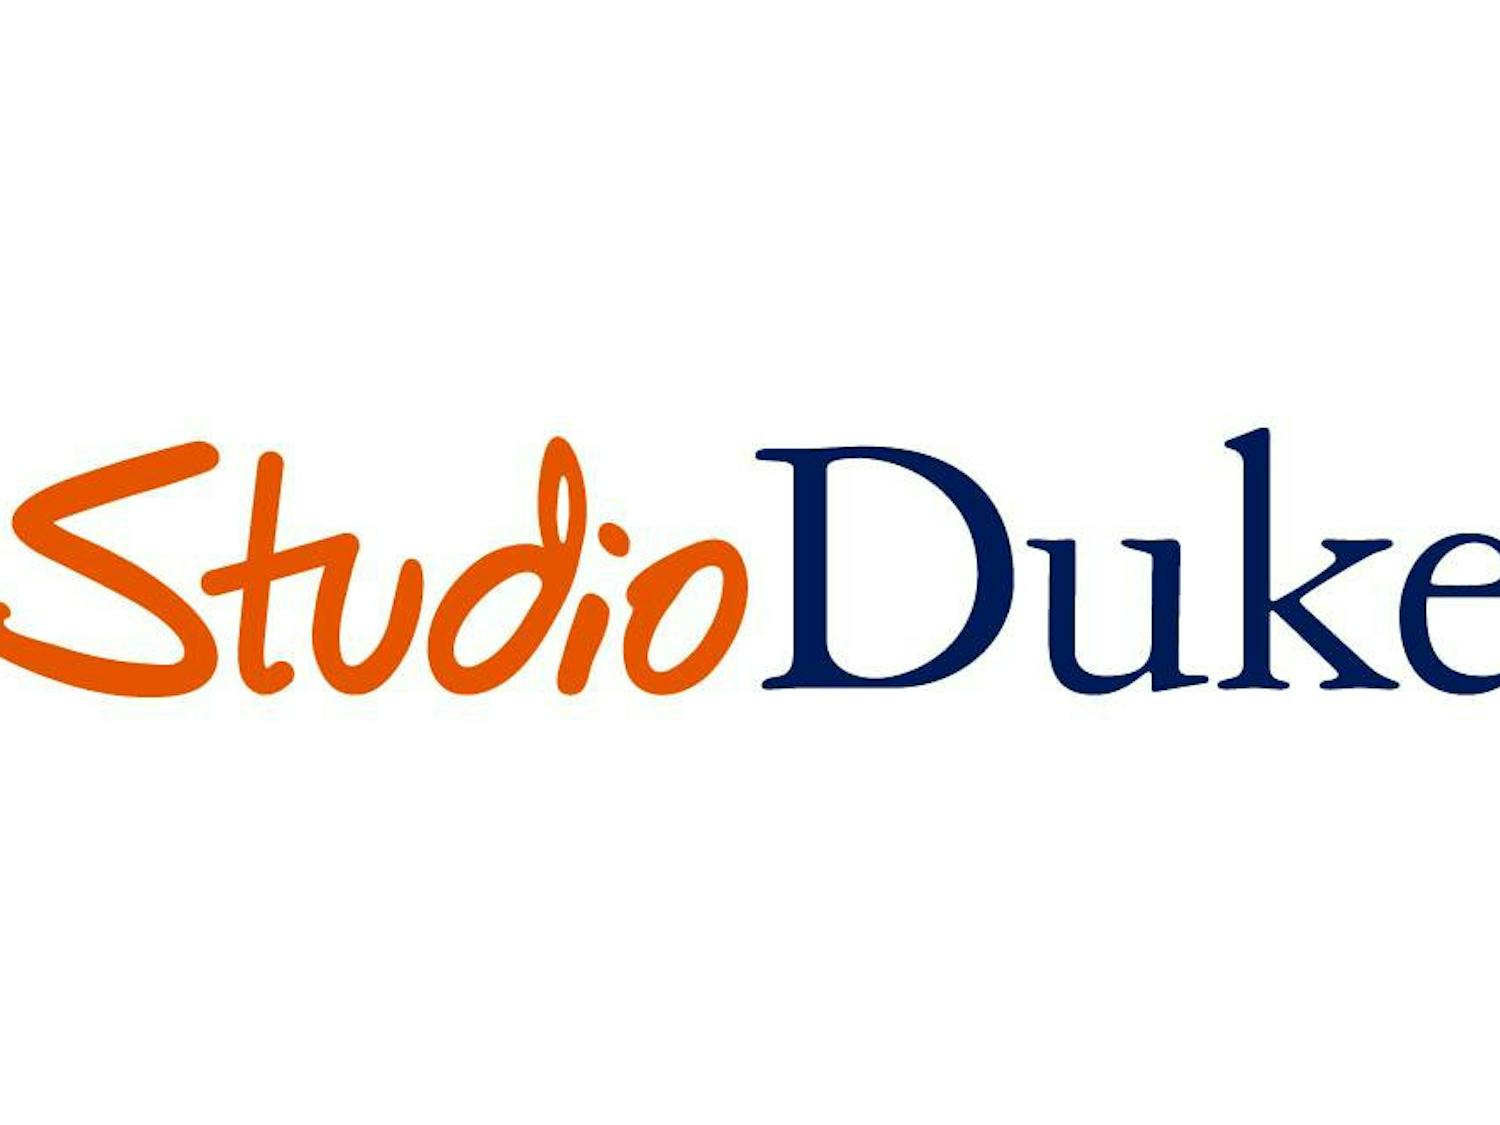 StudioDuke Logo